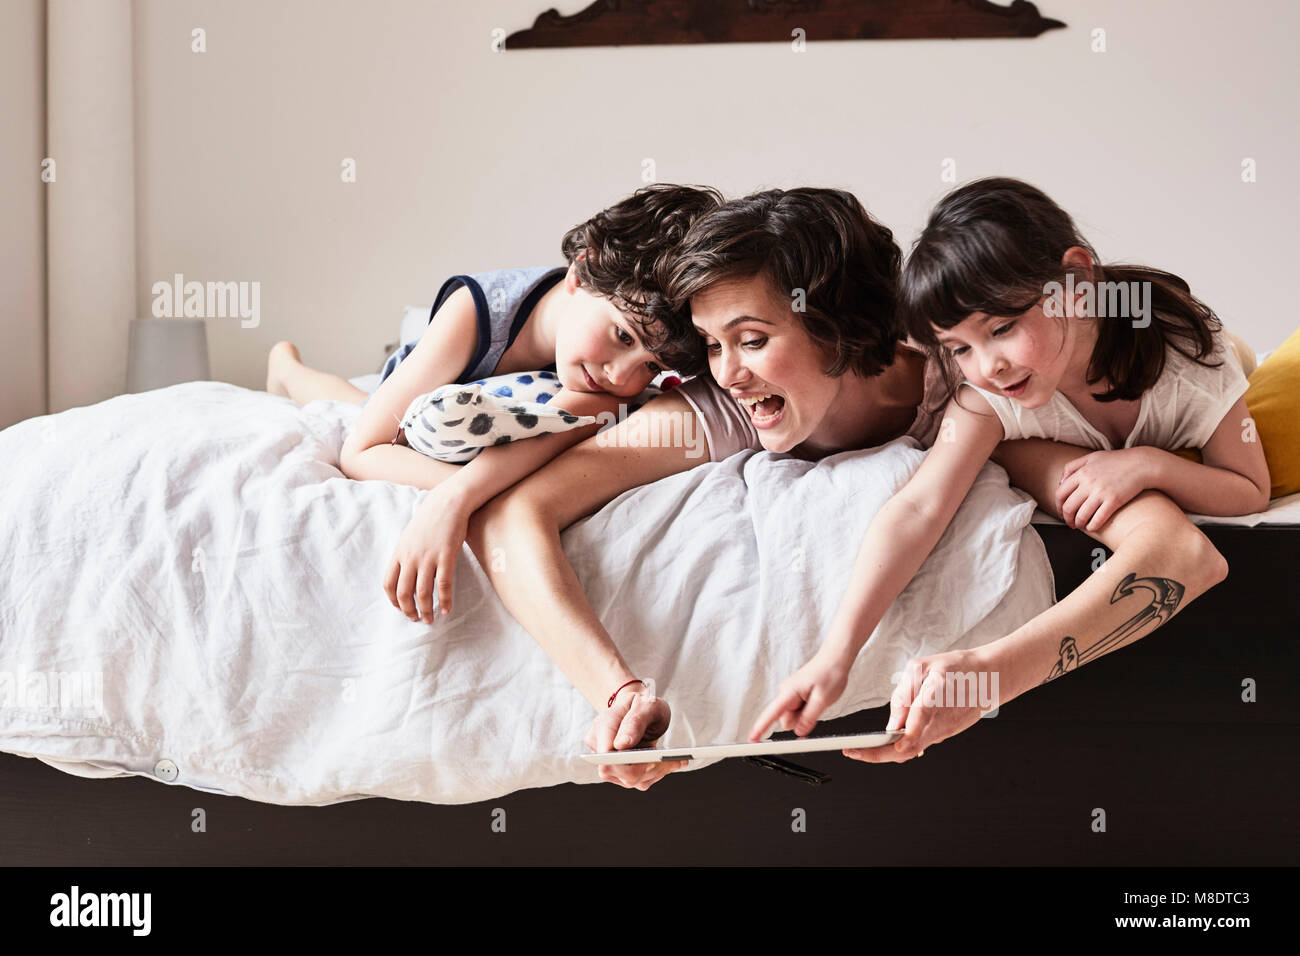 La mère, le fils et fille lying on bed, using digital tablet Banque D'Images